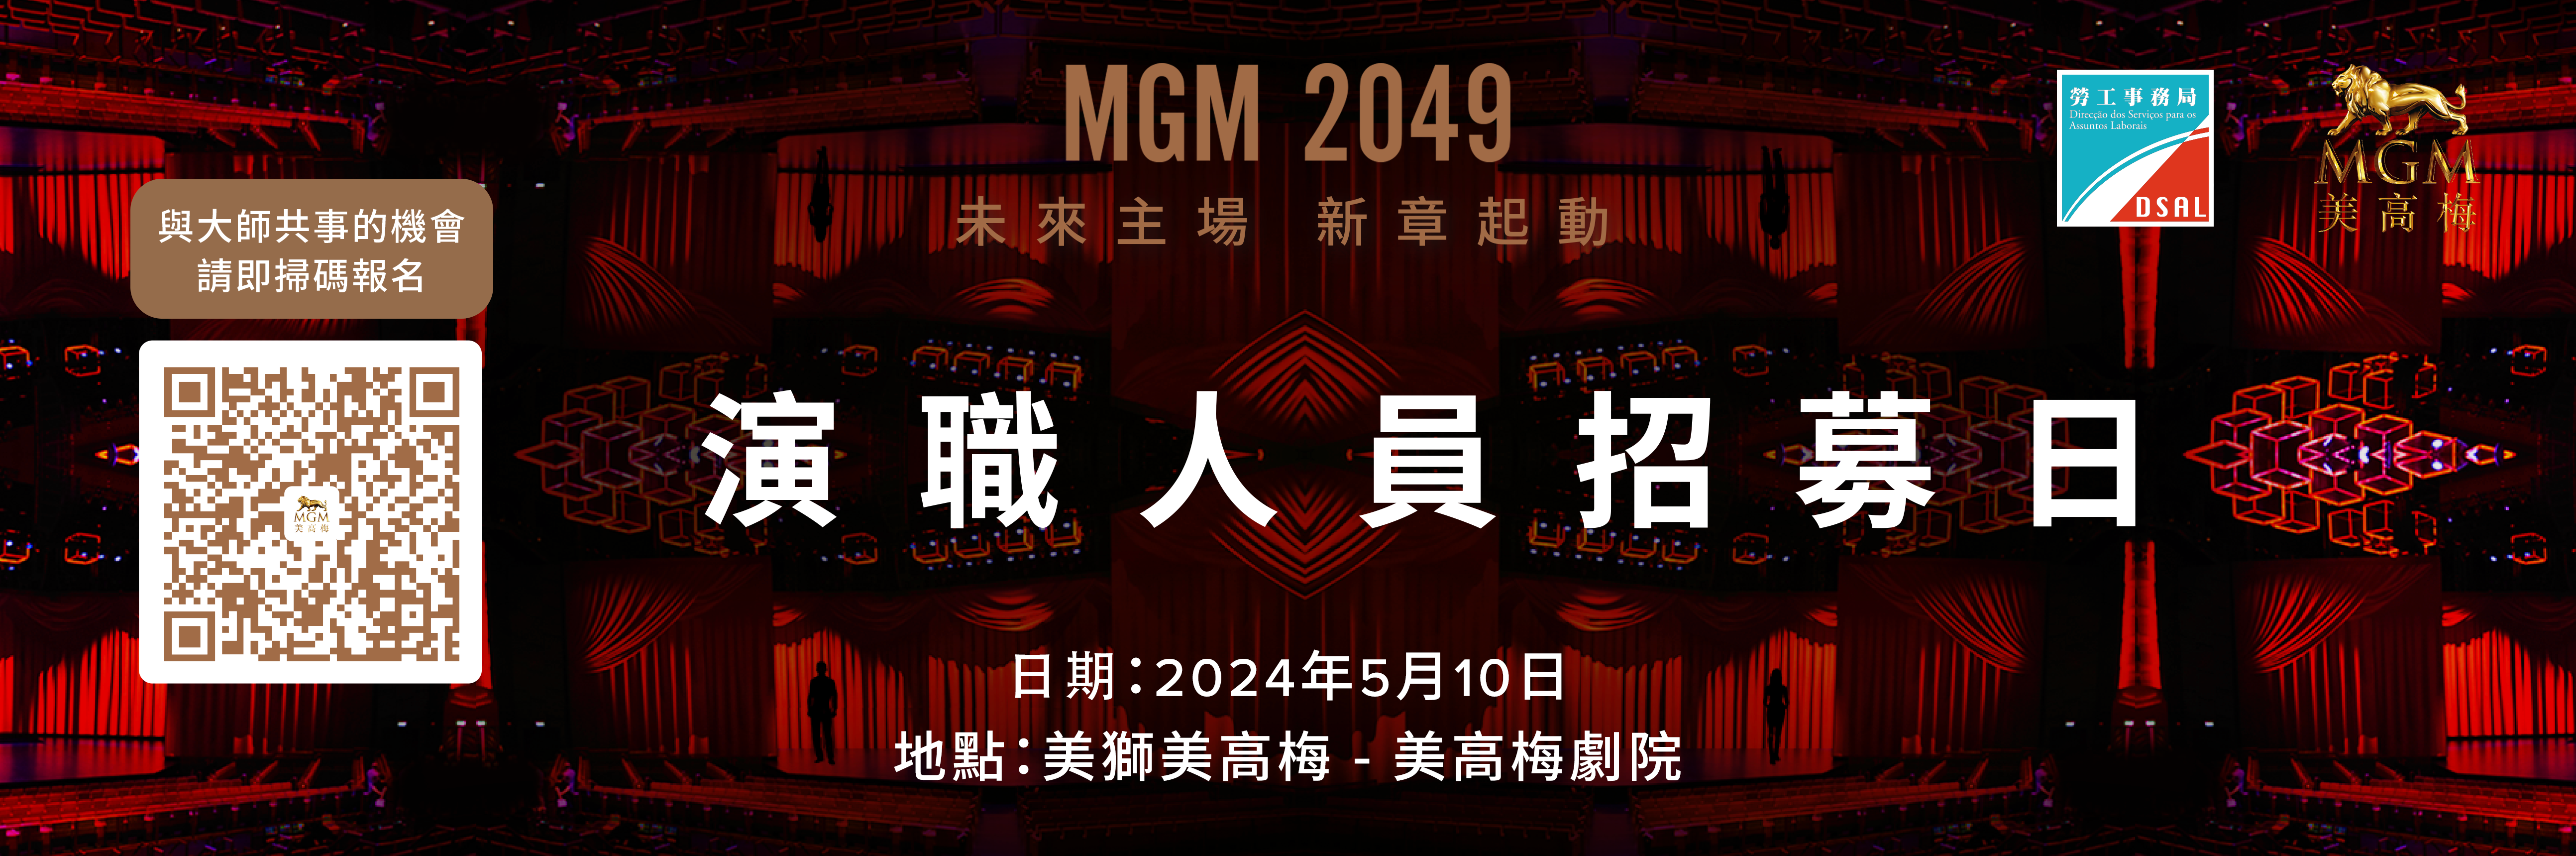 「MGM 2049」专场配对会